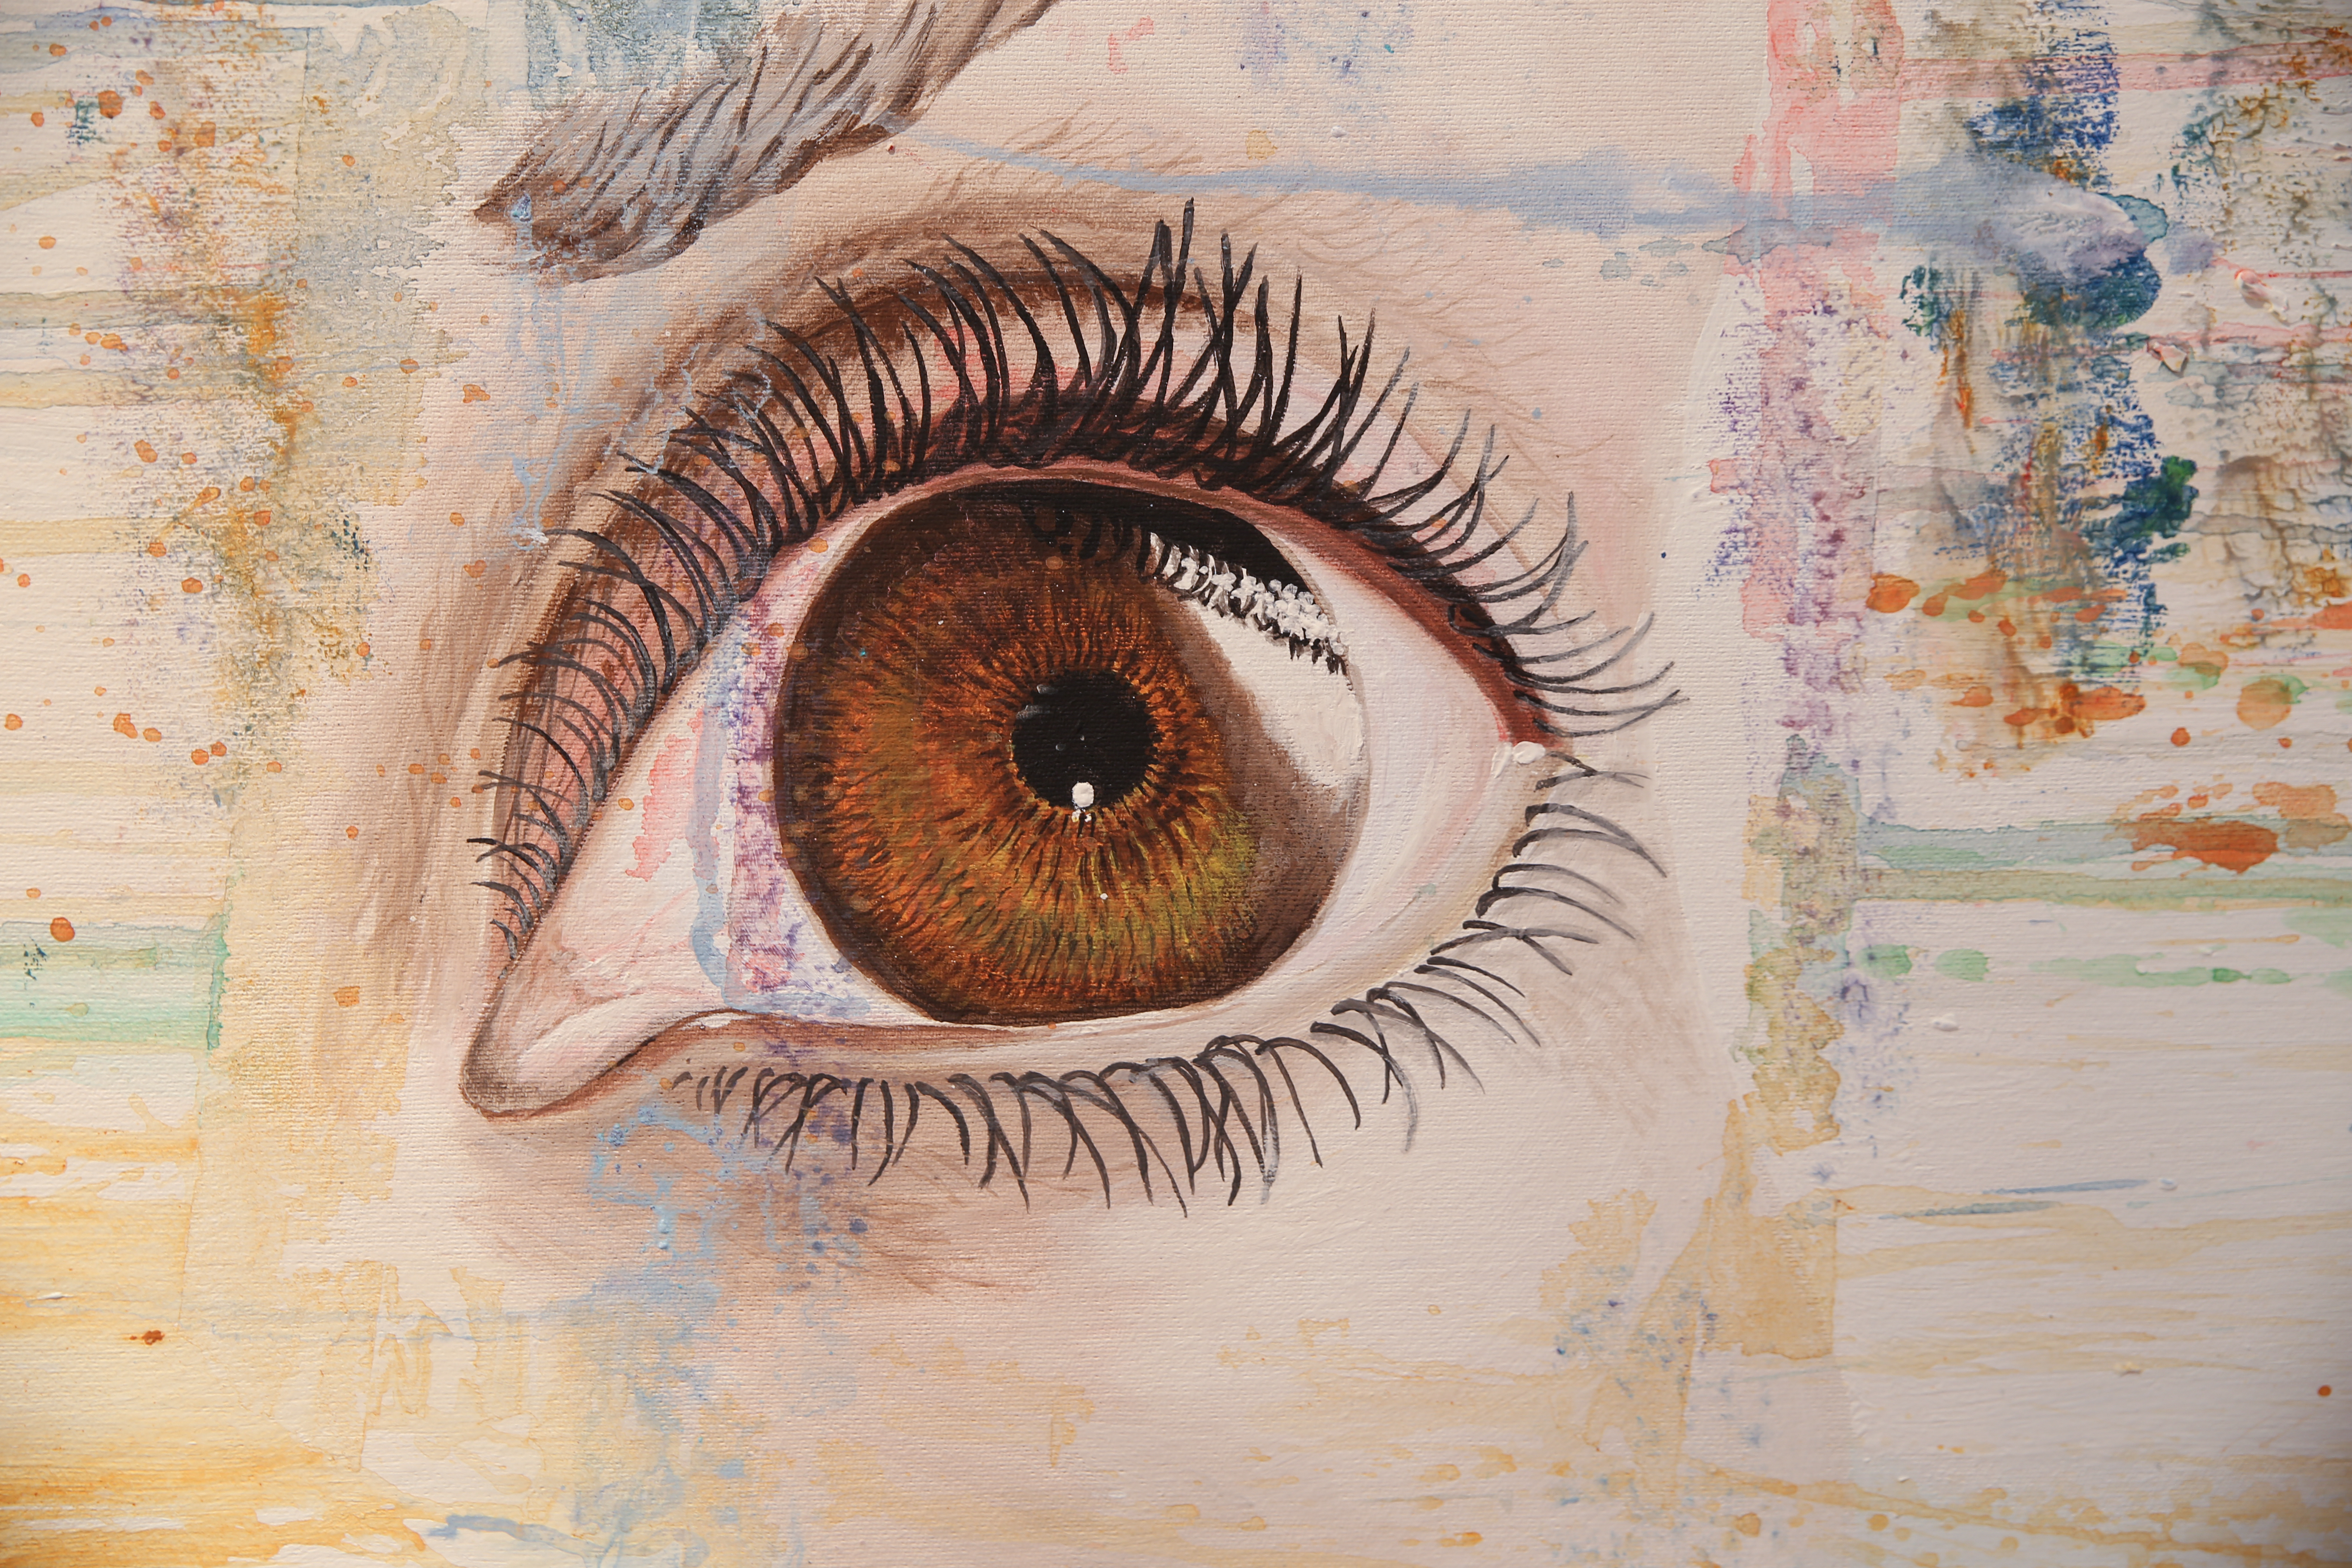 Detailstudie eines Auges, gemalt in Acryl von der Dozentin Petra Wenski-Hänisch, als Beispiel für realistische bzw. figürliche Malerei.